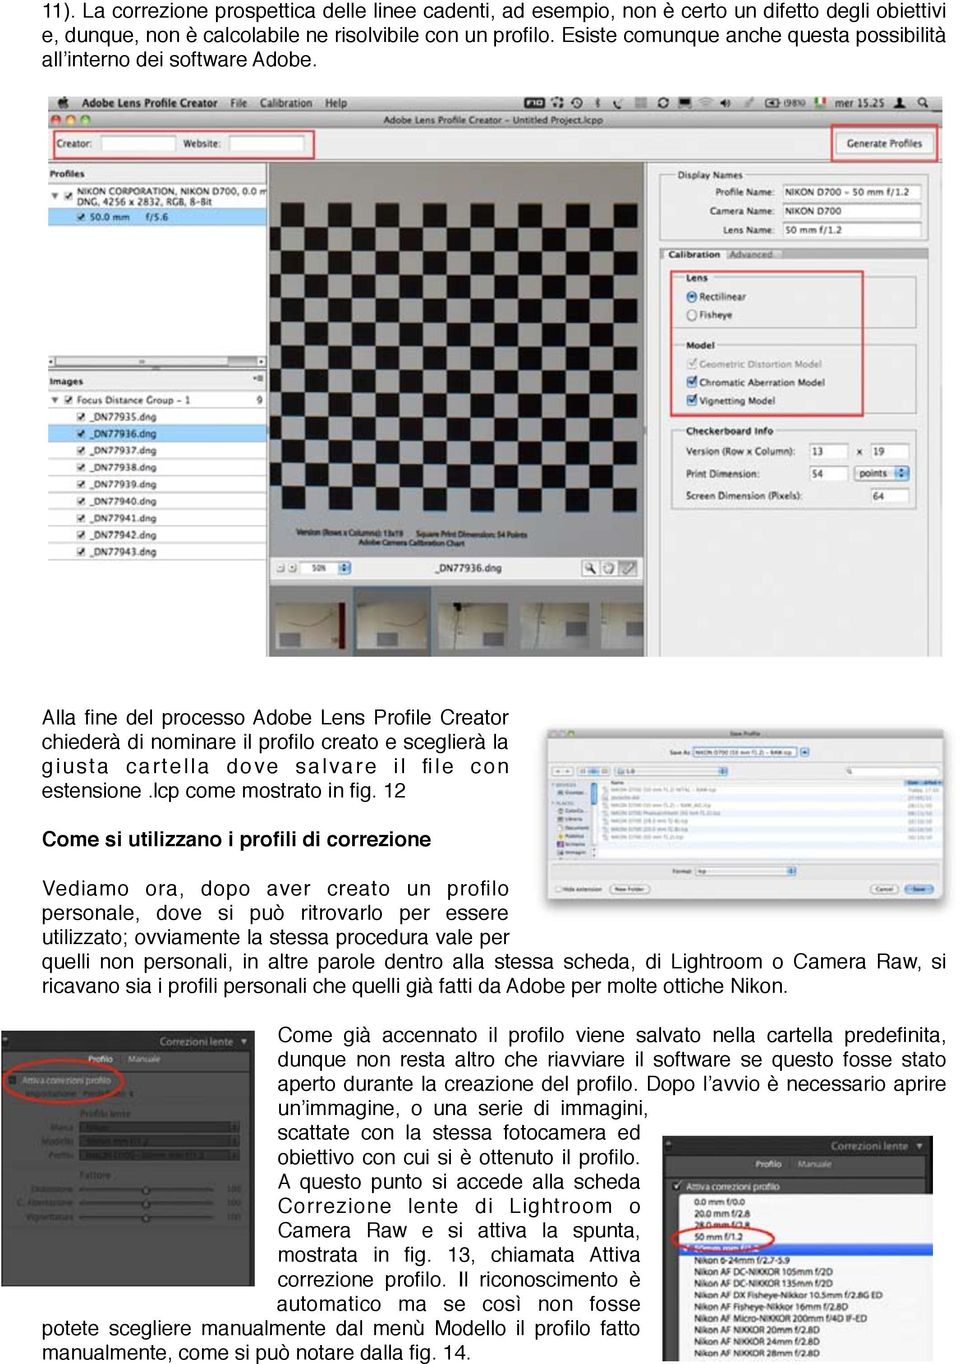 Alla fine del processo Adobe Lens Profile Creator chiederà di nominare il profilo creato e sceglierà la giusta cartella dove salvare il file con estensione.lcp come mostrato in fig.